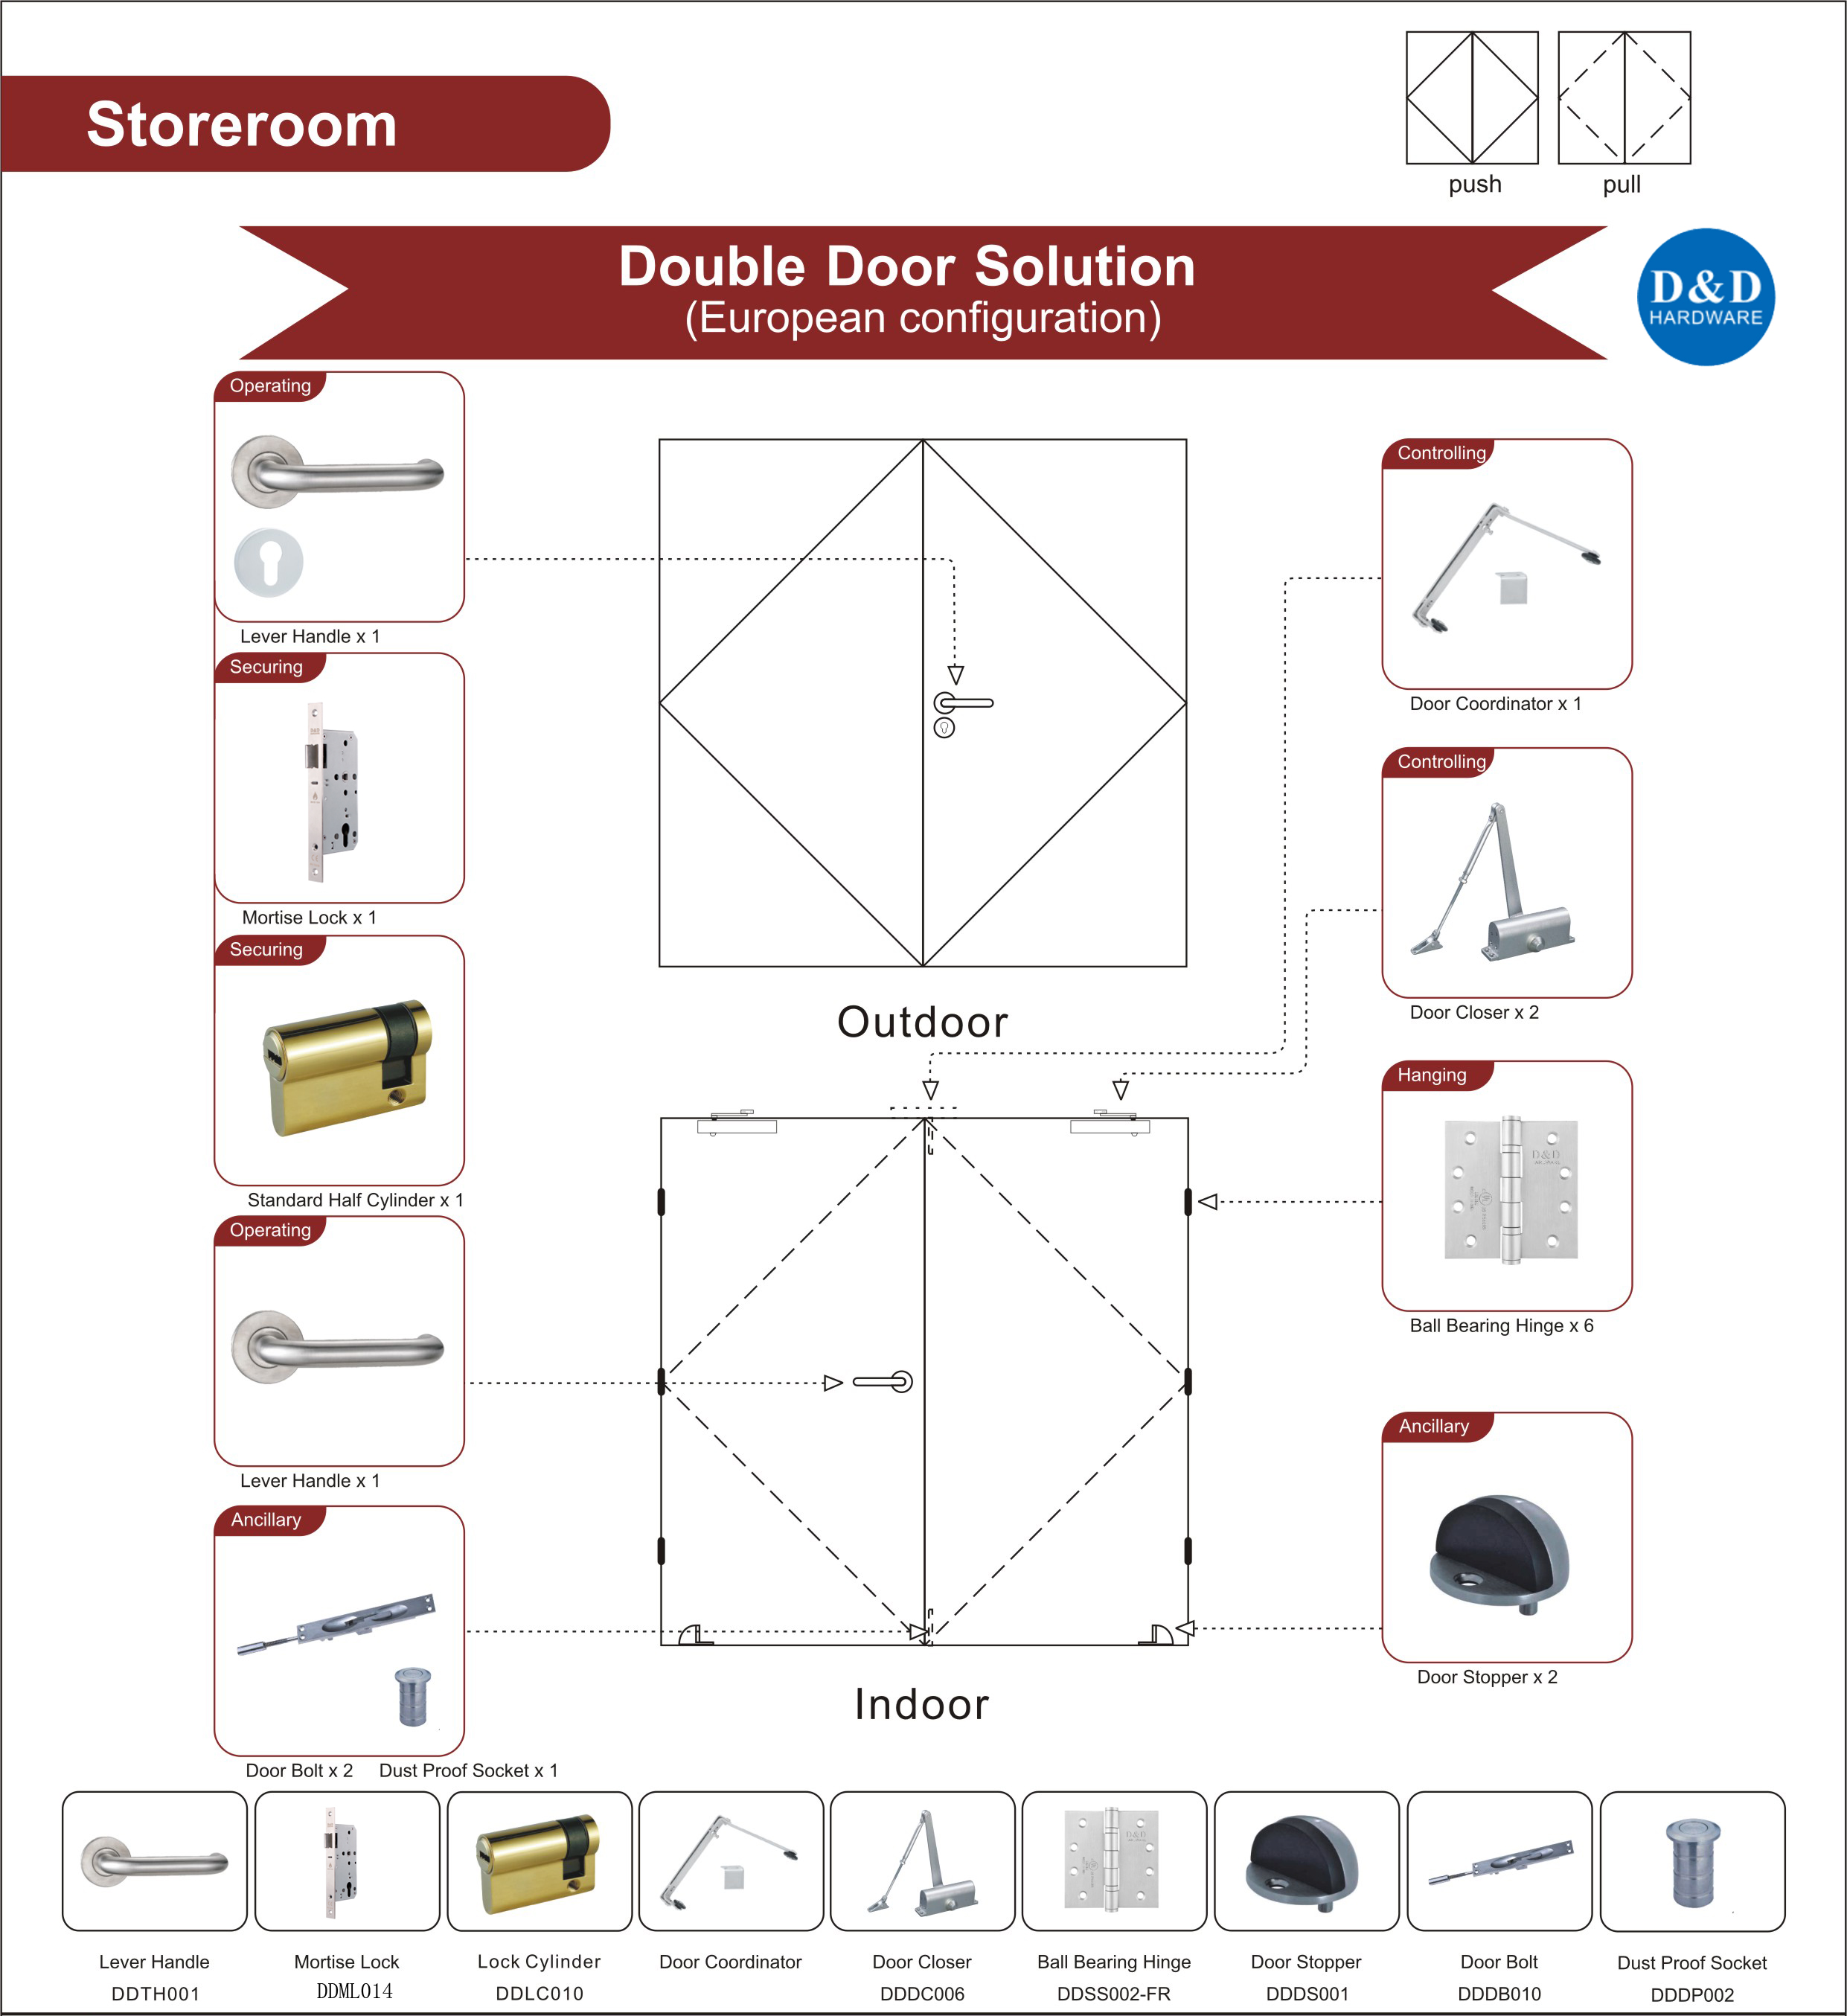 Storeroom Double Door Solution-D&D Hardware 